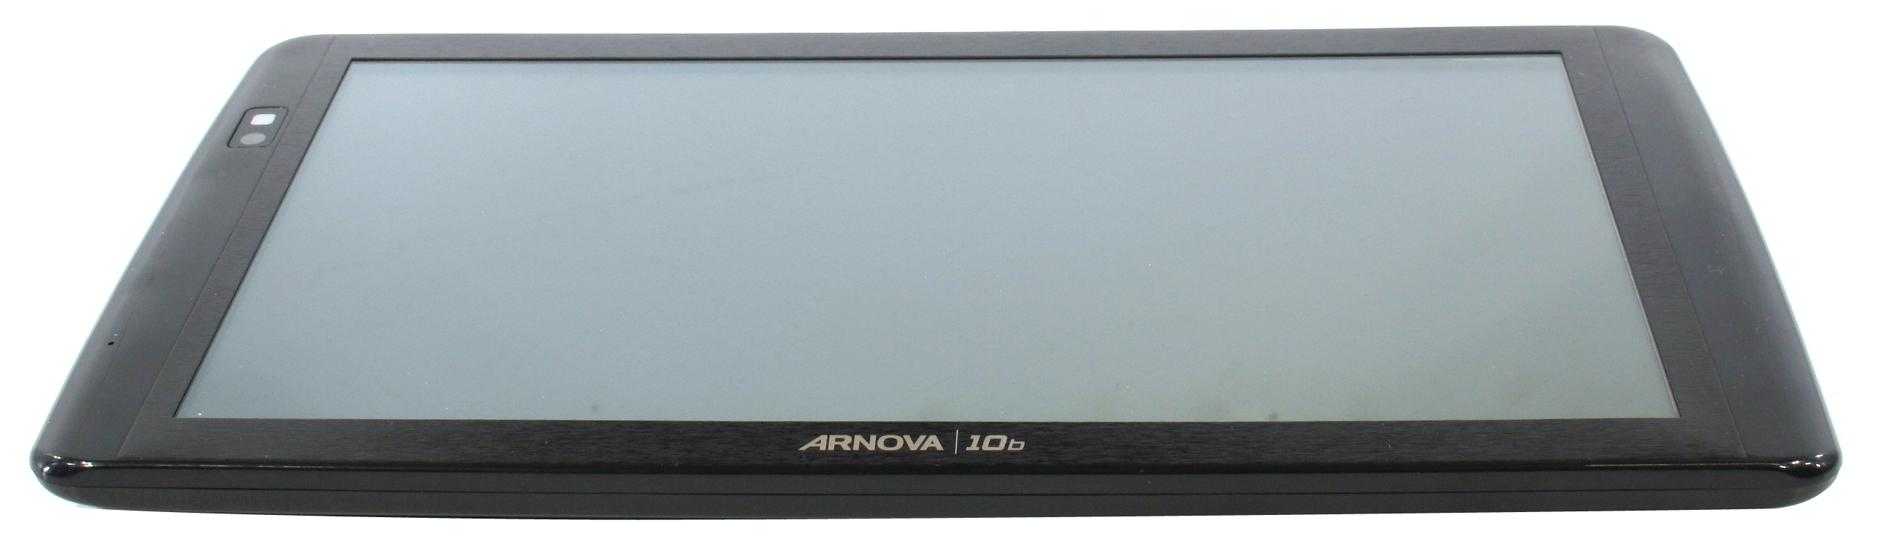 Планшет archos arnova 10b g3 4 гб wifi черный — купить, цена и характеристики, отзывы